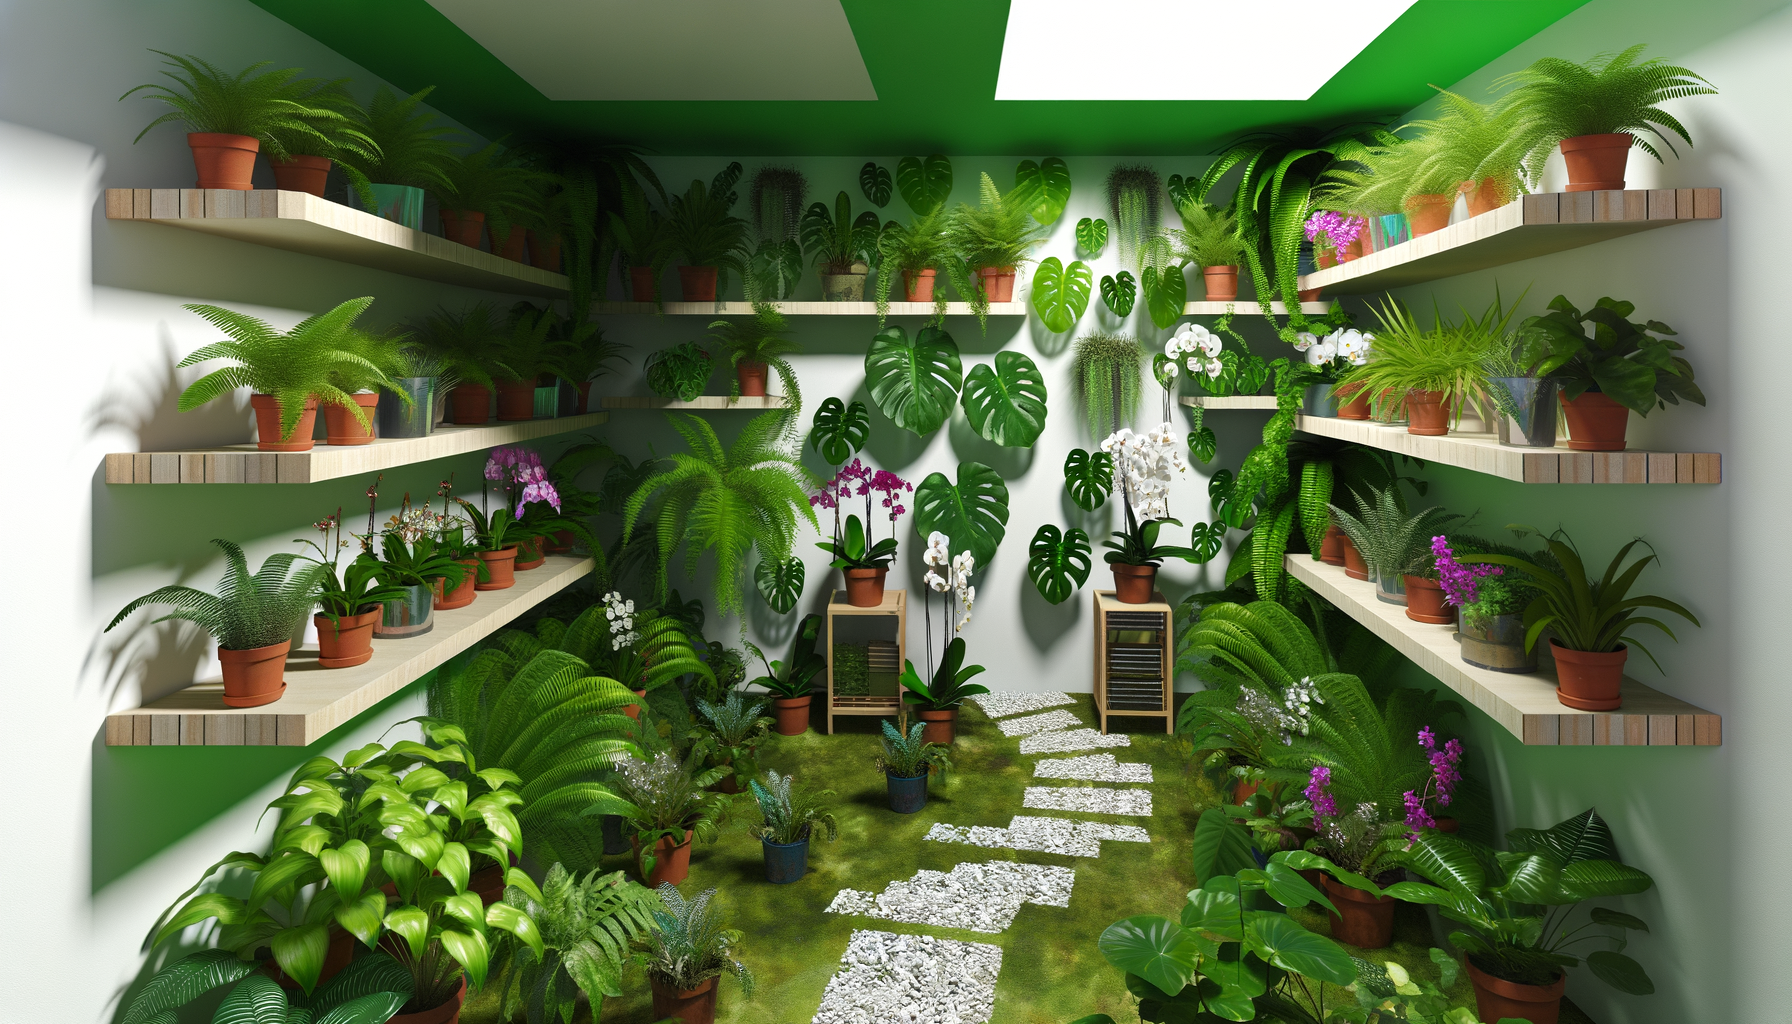 "Inspiration pour aménager un jardin d'intérieur magique dans un petit espace"